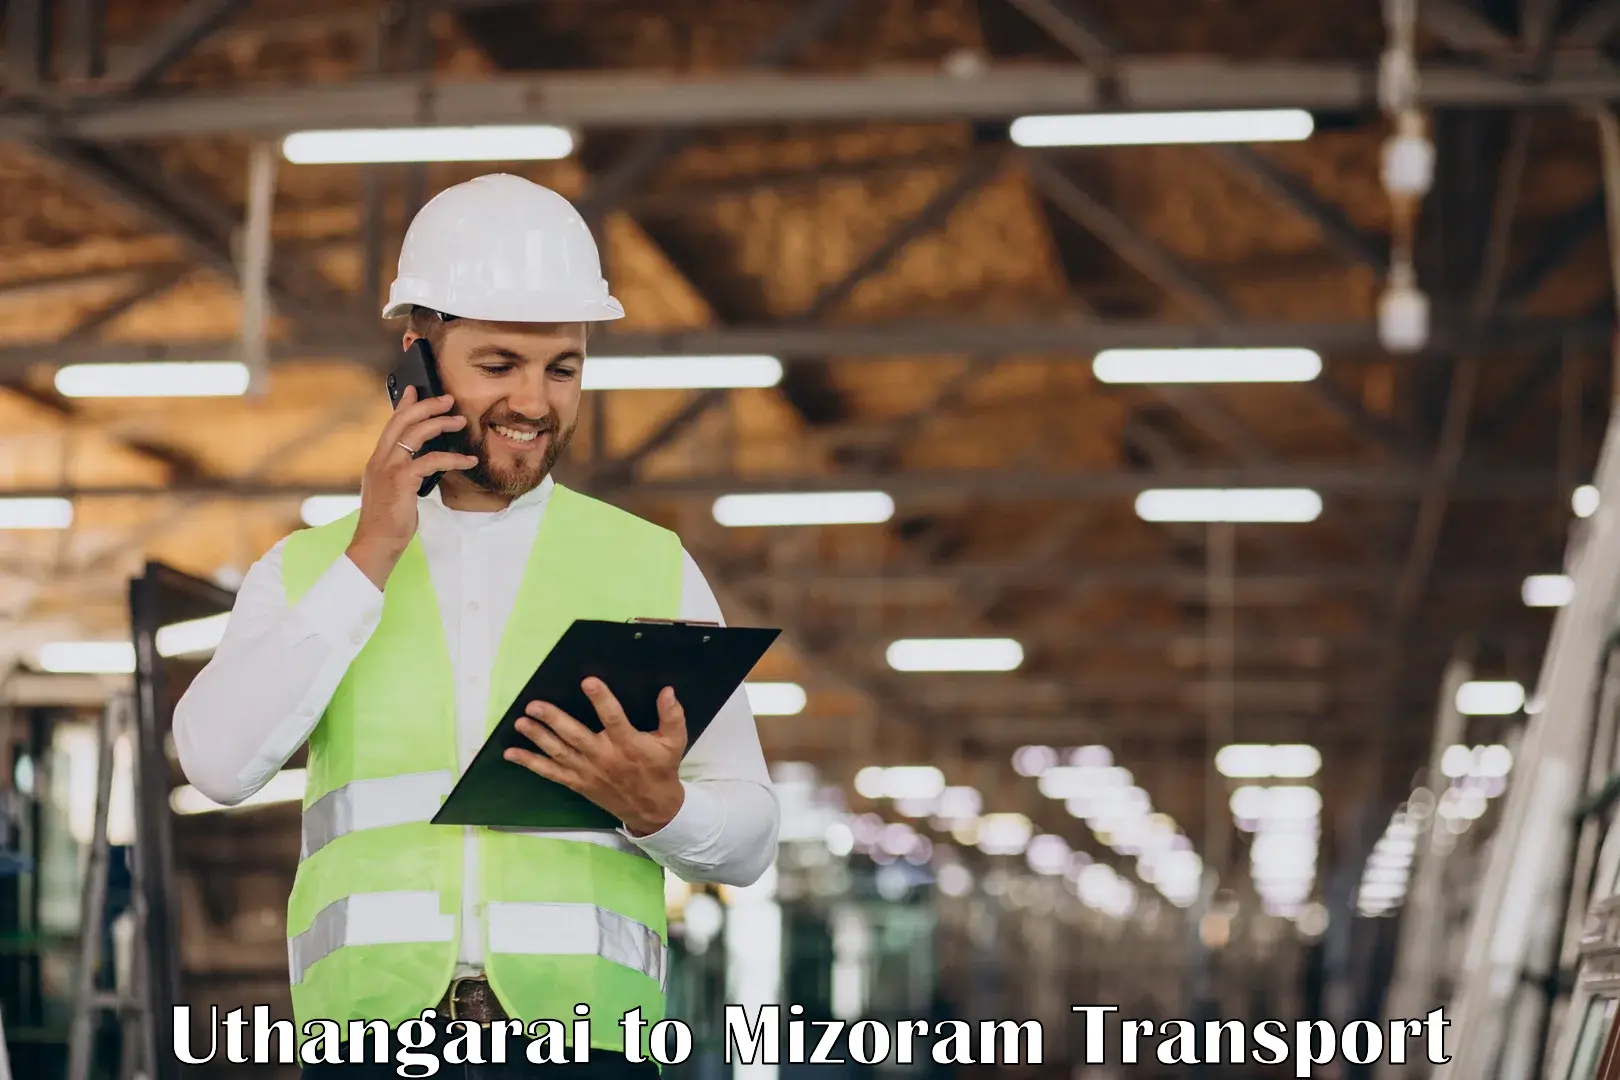 Shipping partner Uthangarai to Mizoram